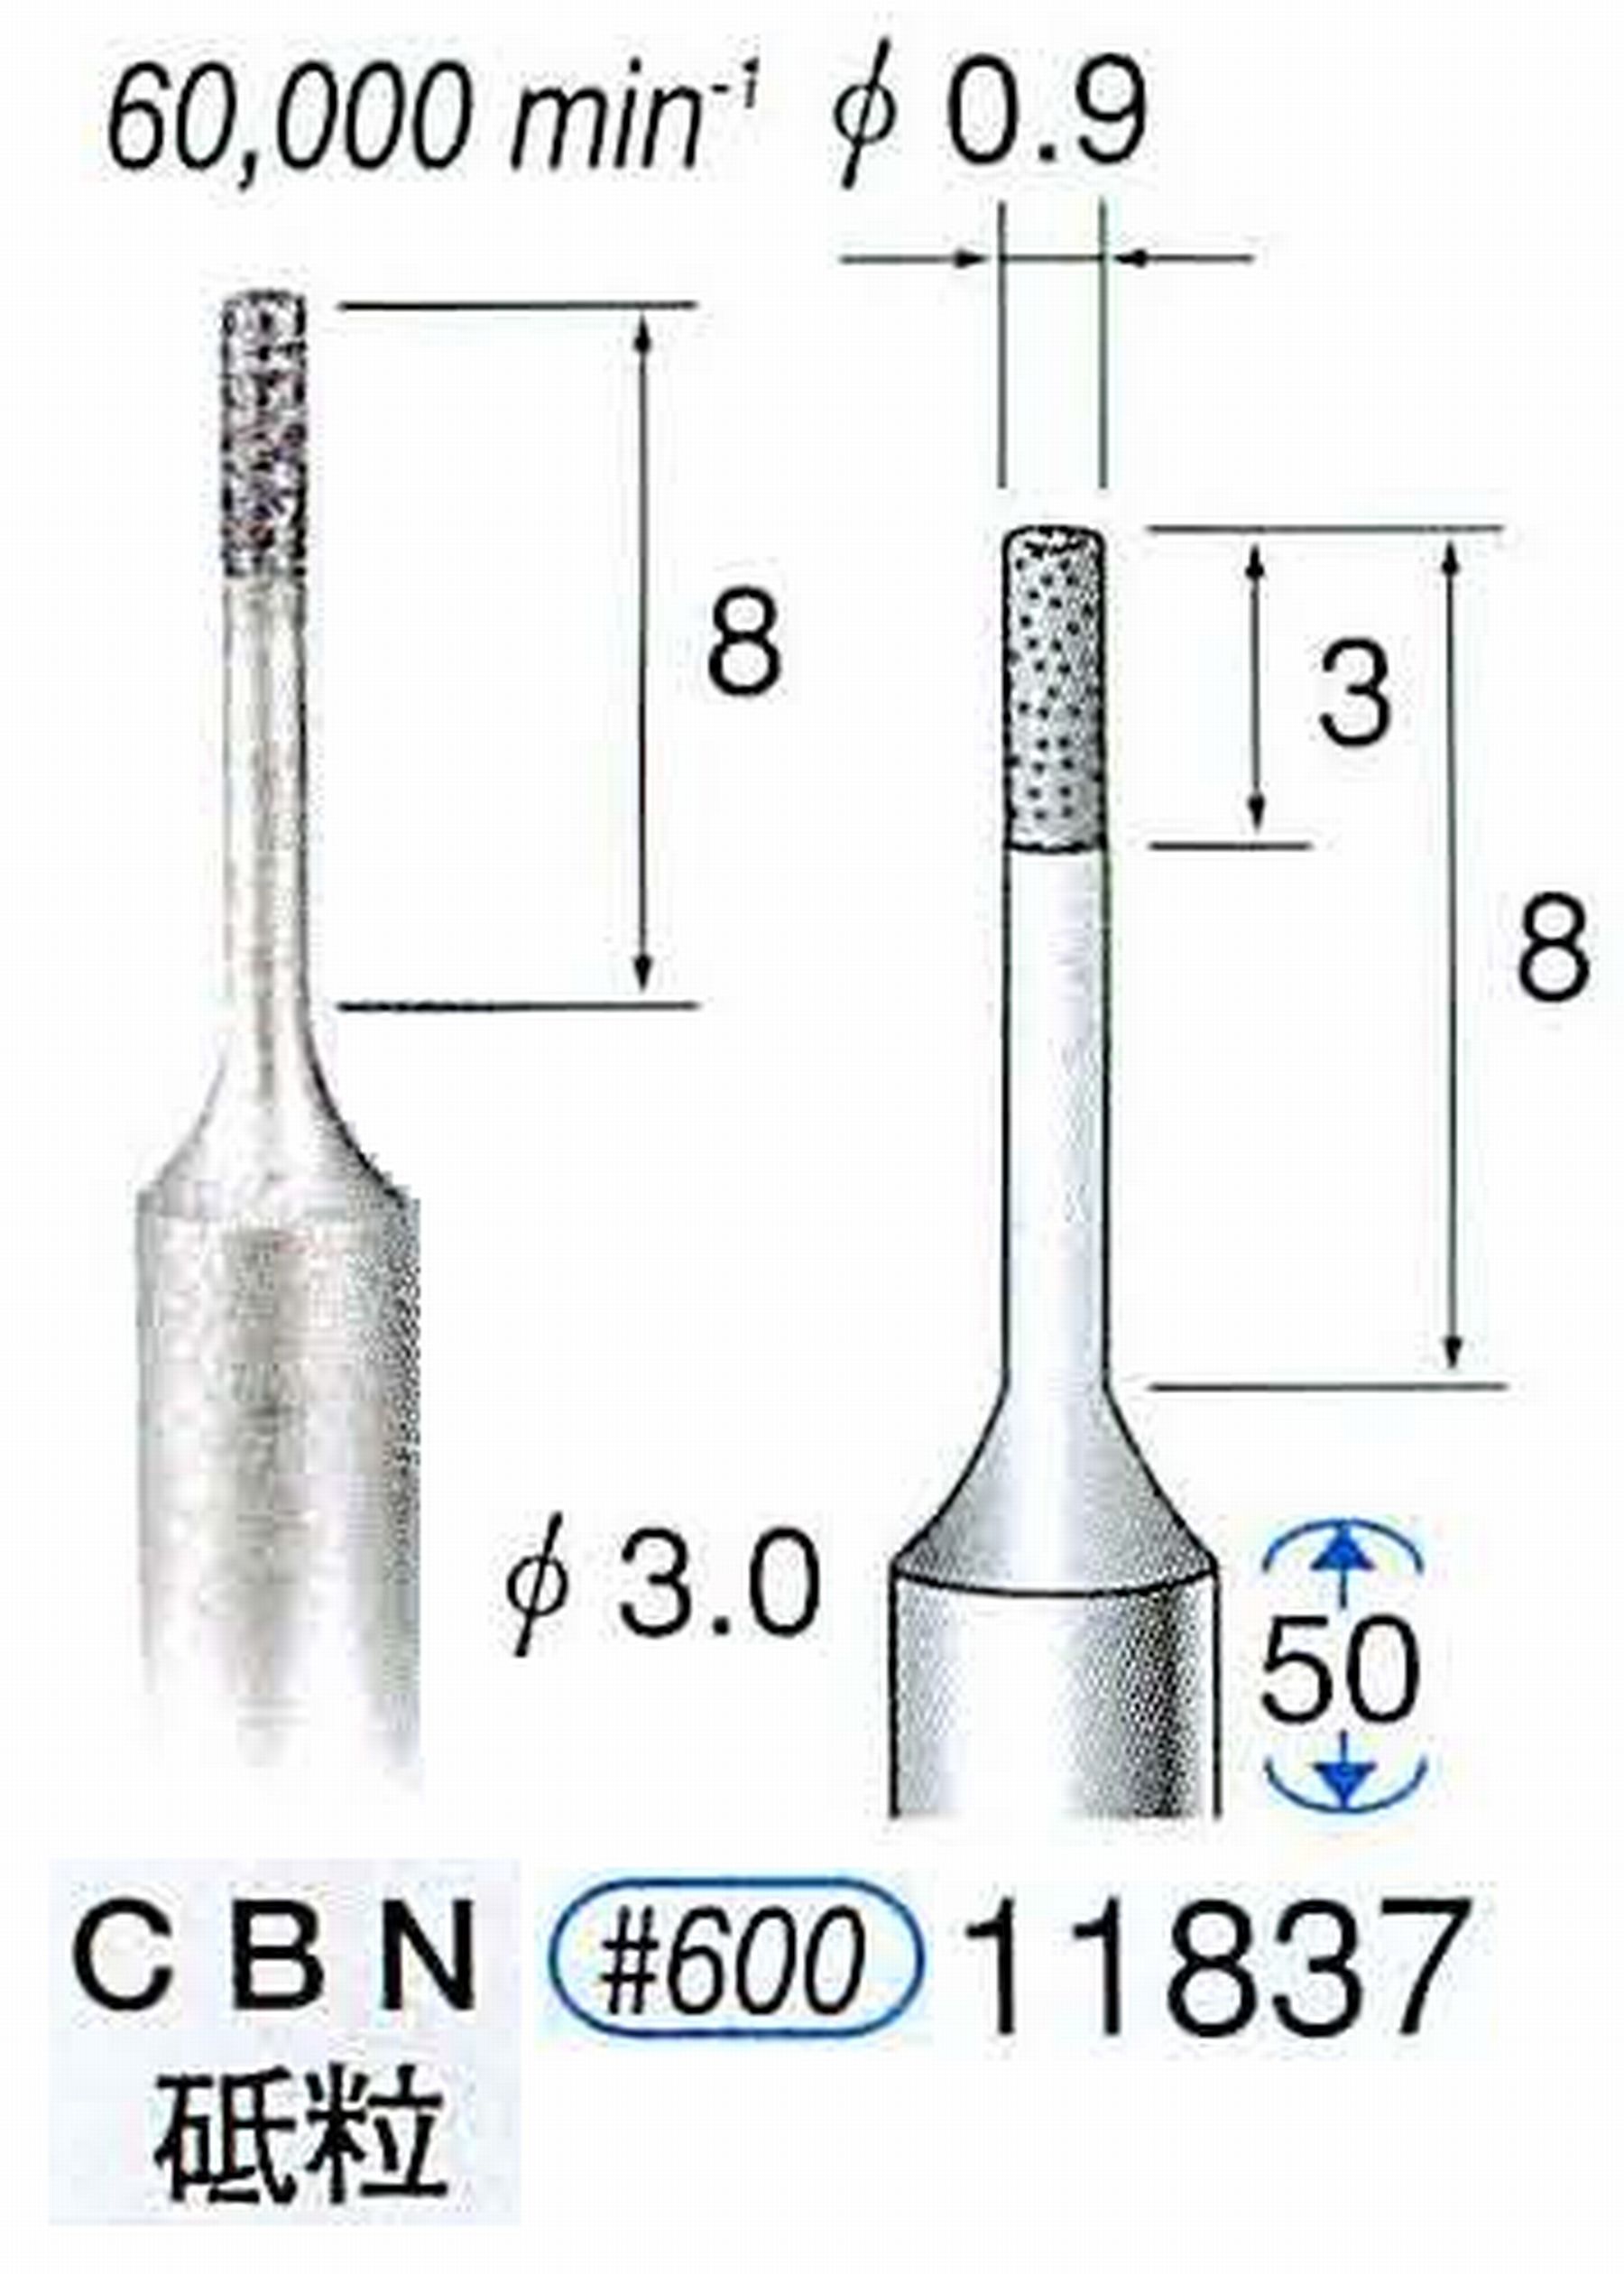 ナカニシ/NAKANISHI SP電着CBNバー CBN砥粒 軸径(シャンク)φ3.0mm 11837